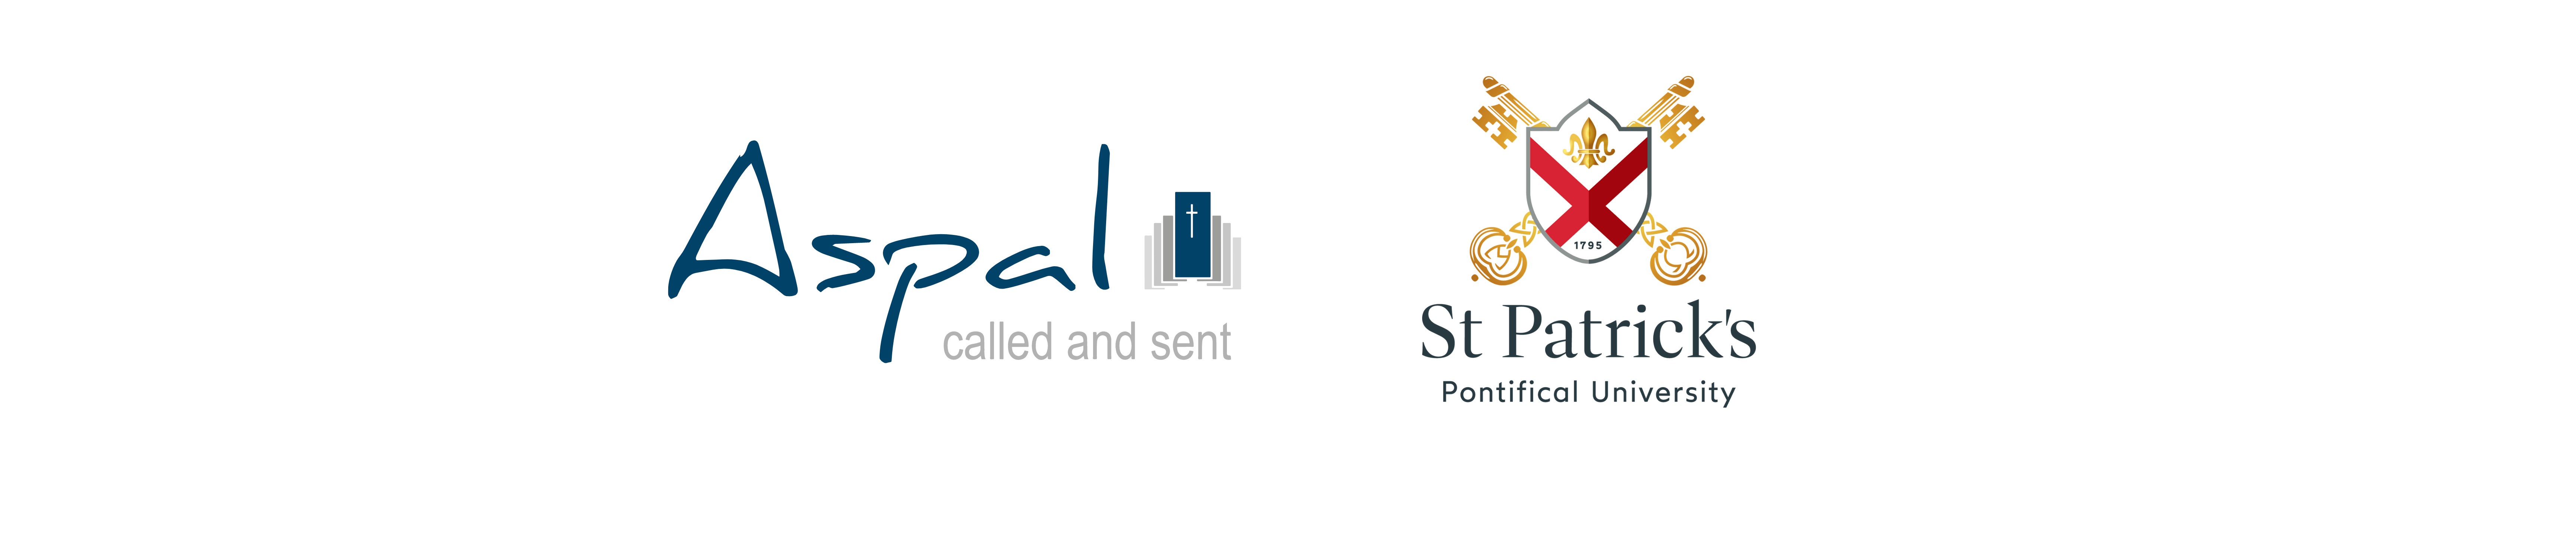 sppu-aspal-logos-new.png#asset:12348